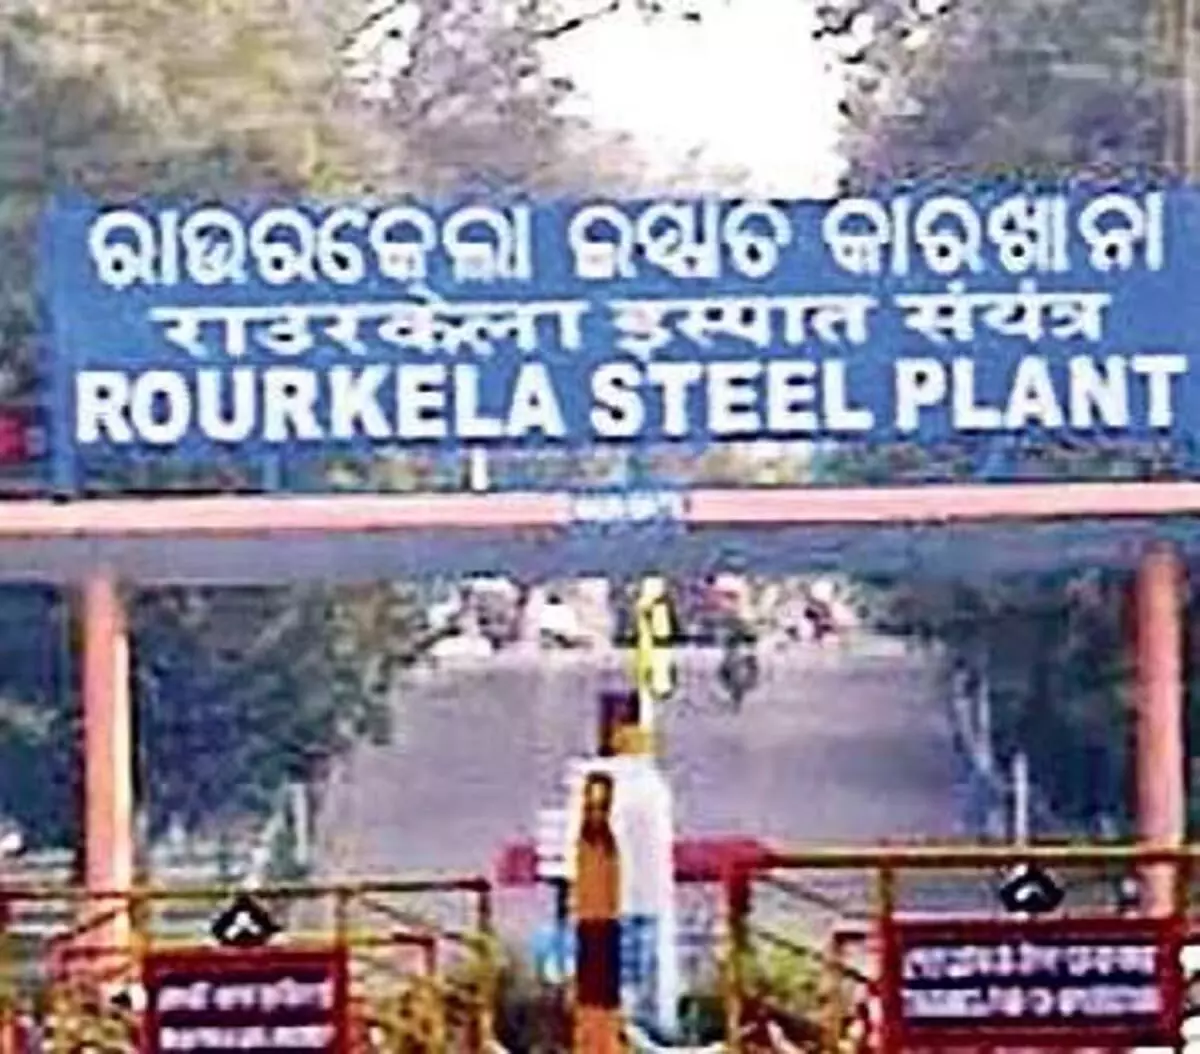 Odisha News: राउरकेला स्टील प्लांट की 30 हजार करोड़ रुपये की विस्तार योजना को फिर से शुरू किया